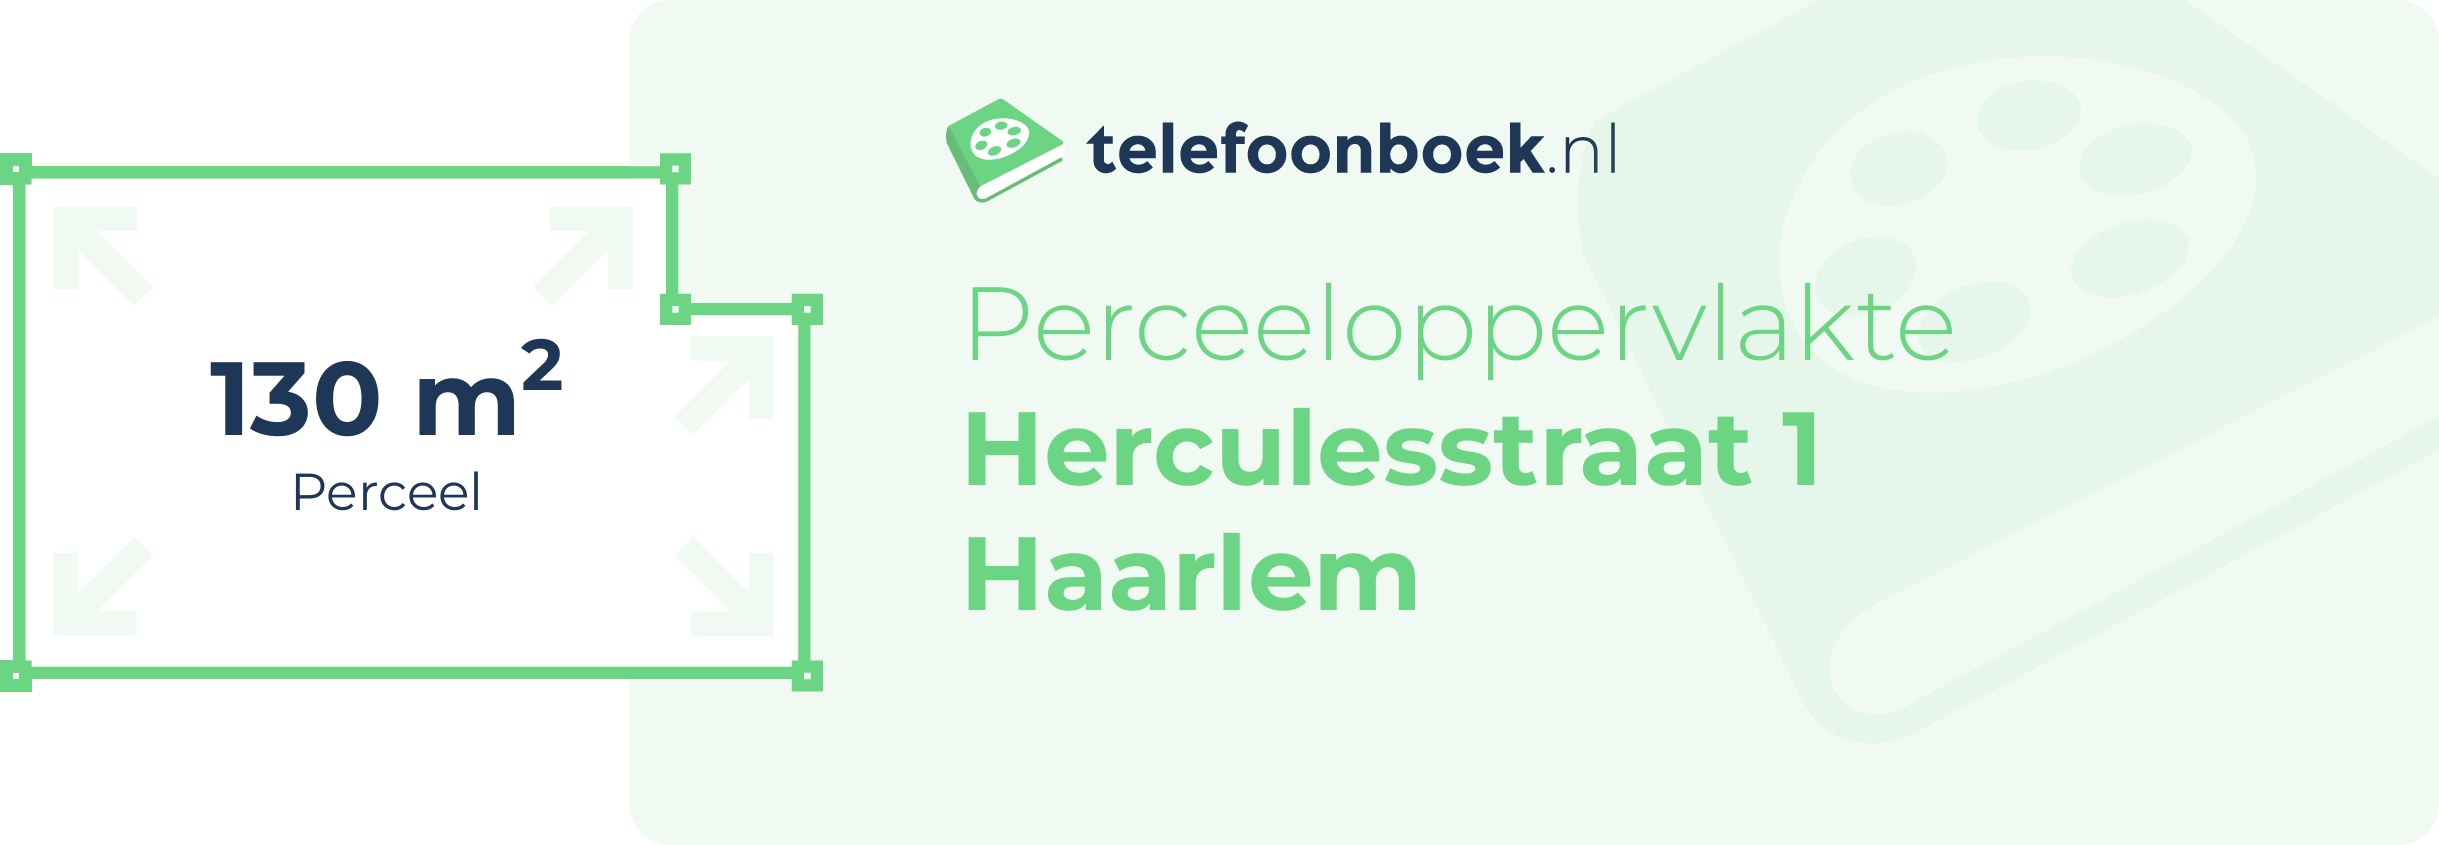 Perceeloppervlakte Herculesstraat 1 Haarlem